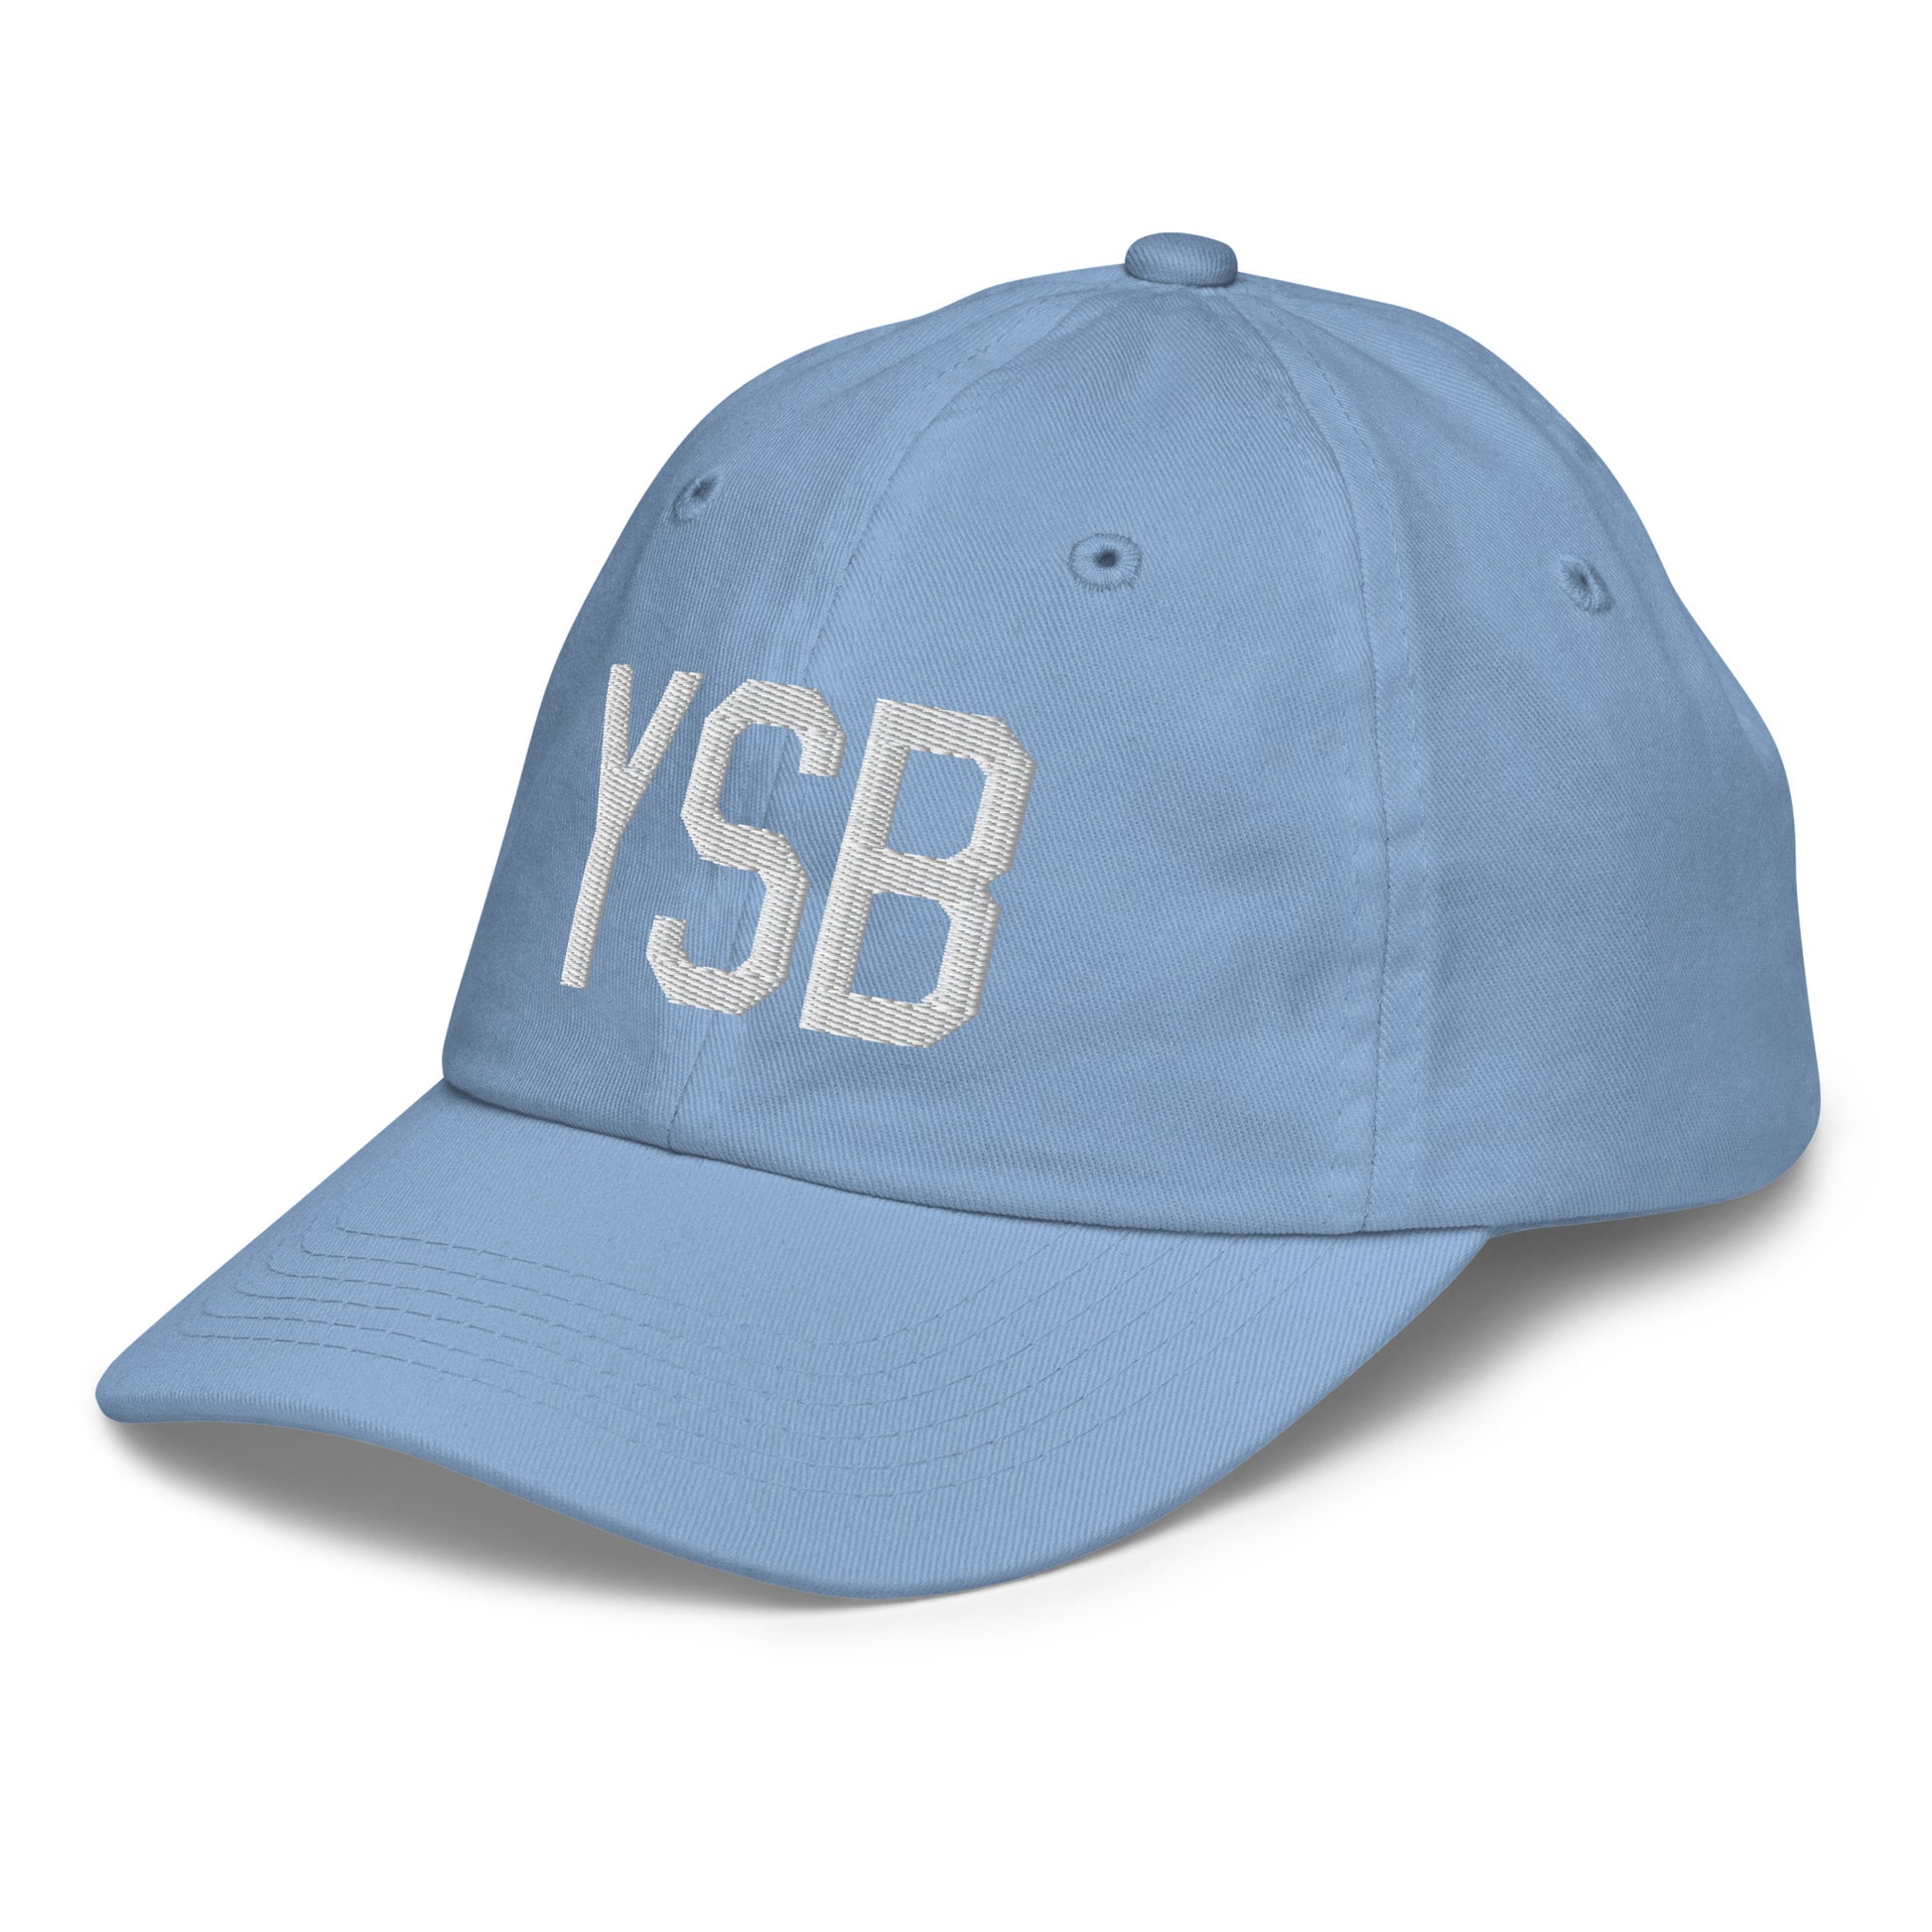 Airport Code Kid's Baseball Cap - White • YSB Sudbury • YHM Designs - Image 24